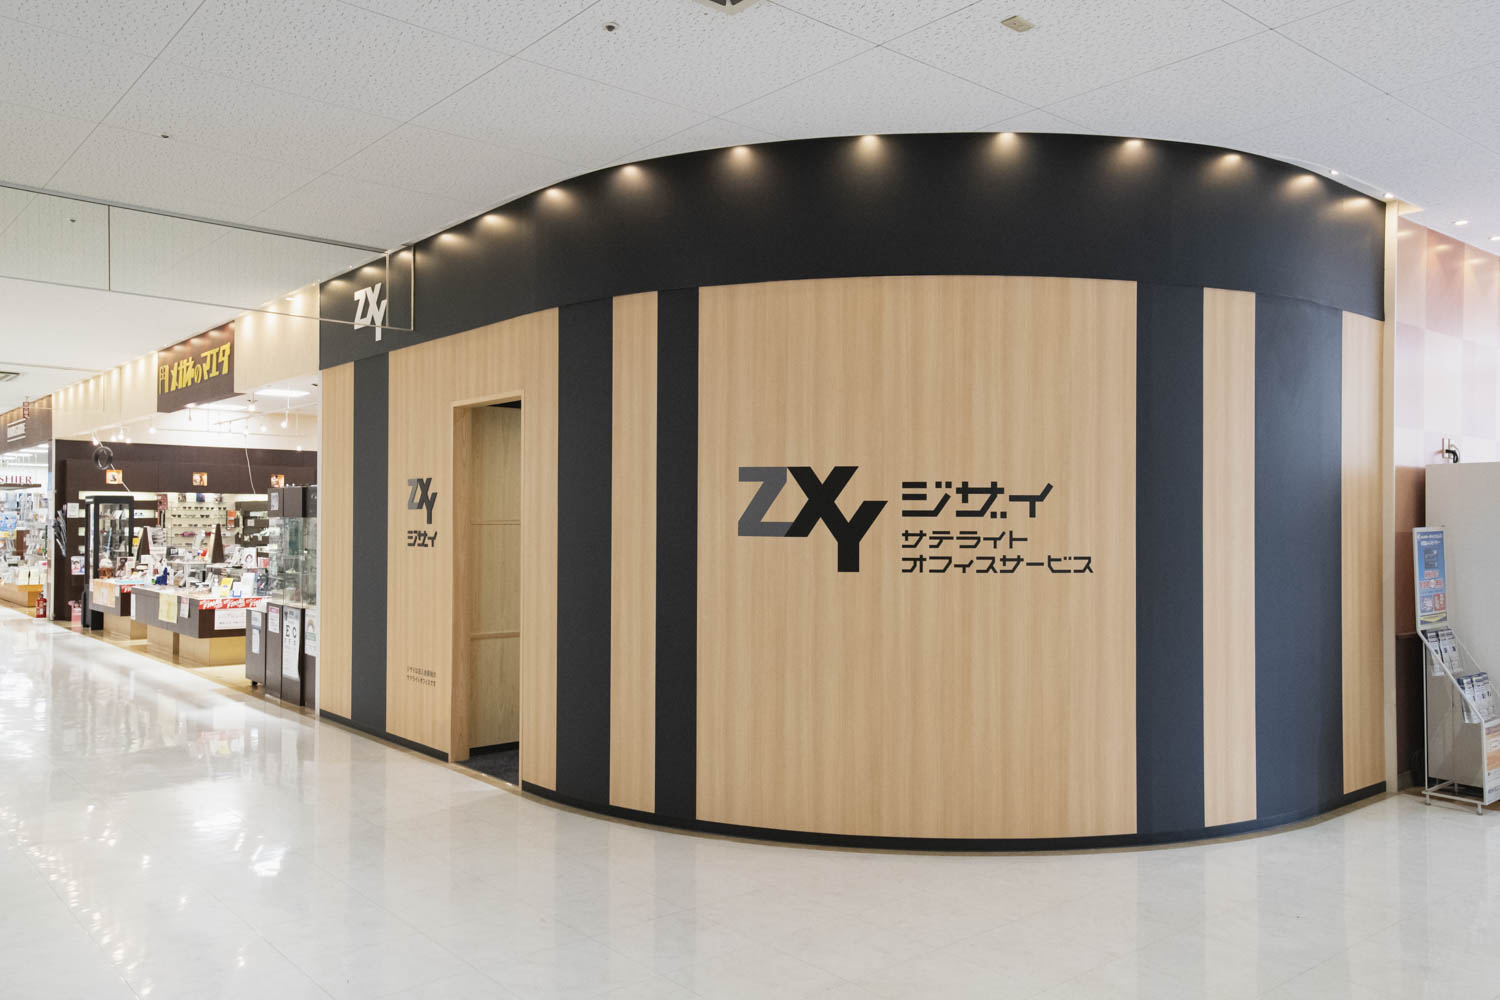 ZXY［ジザイ］武蔵小金井 | サテライトオフィスサービス | テレワーク 